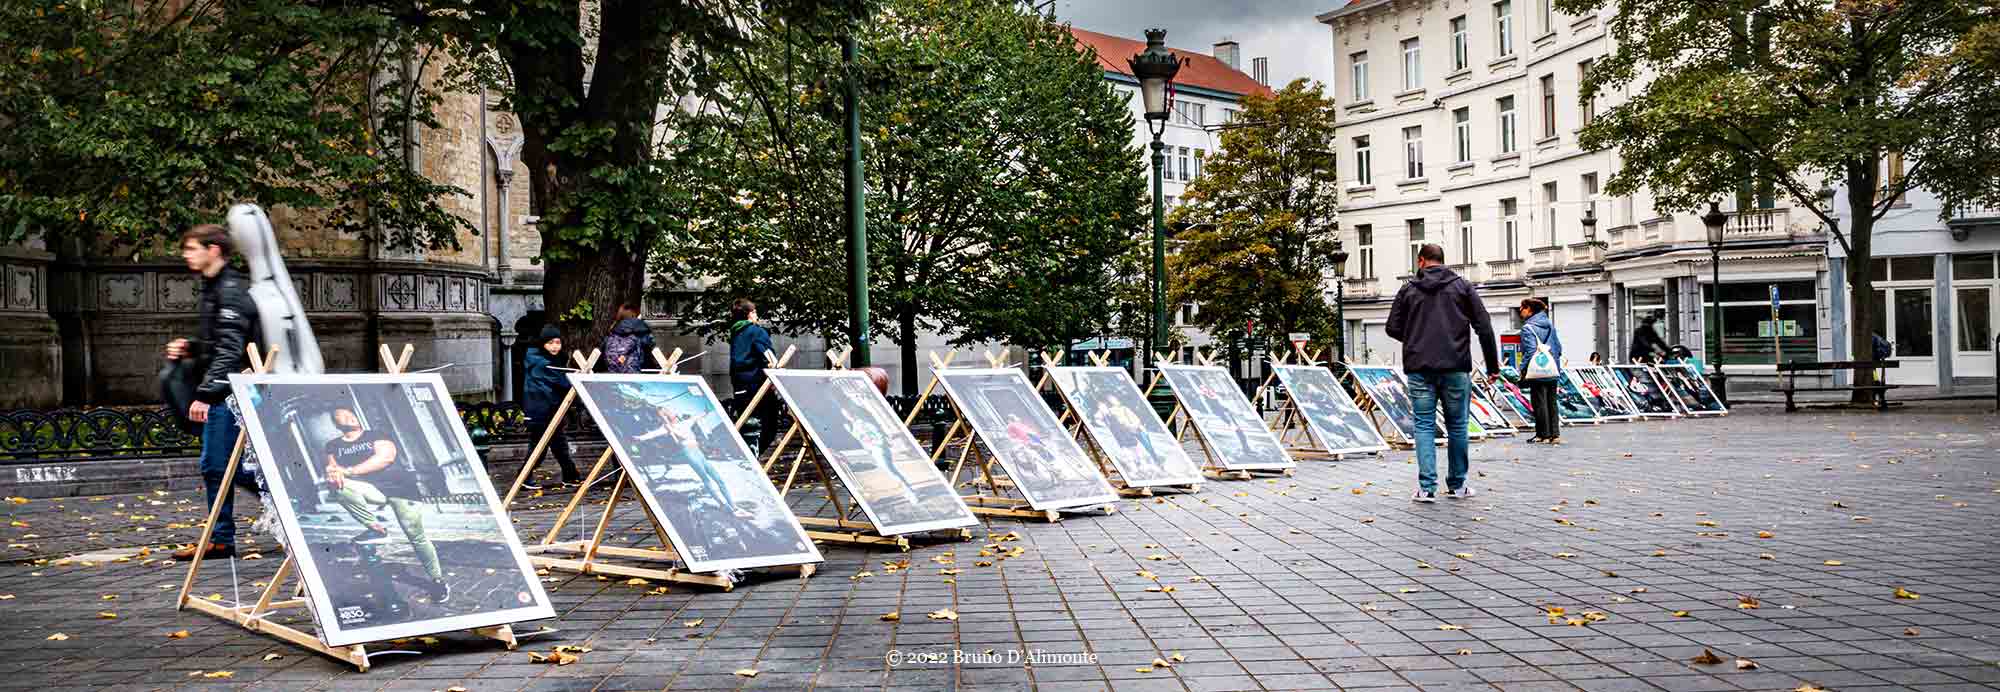 Place aux Reines, une installation qui questionne la place de la femme dans l'espace public